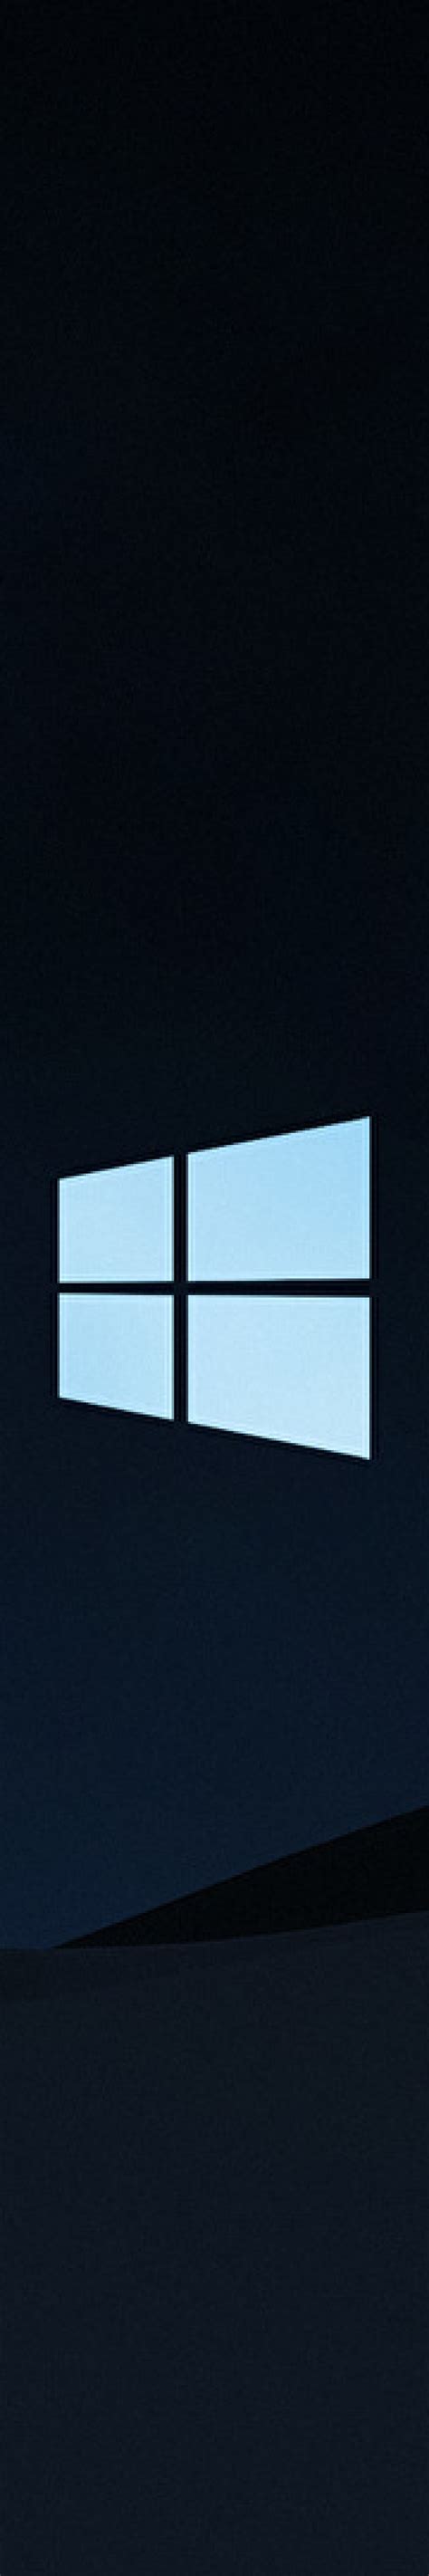 1500x9000 Windows 10 Clean Dark 1500x9000 Resolution Background Hd